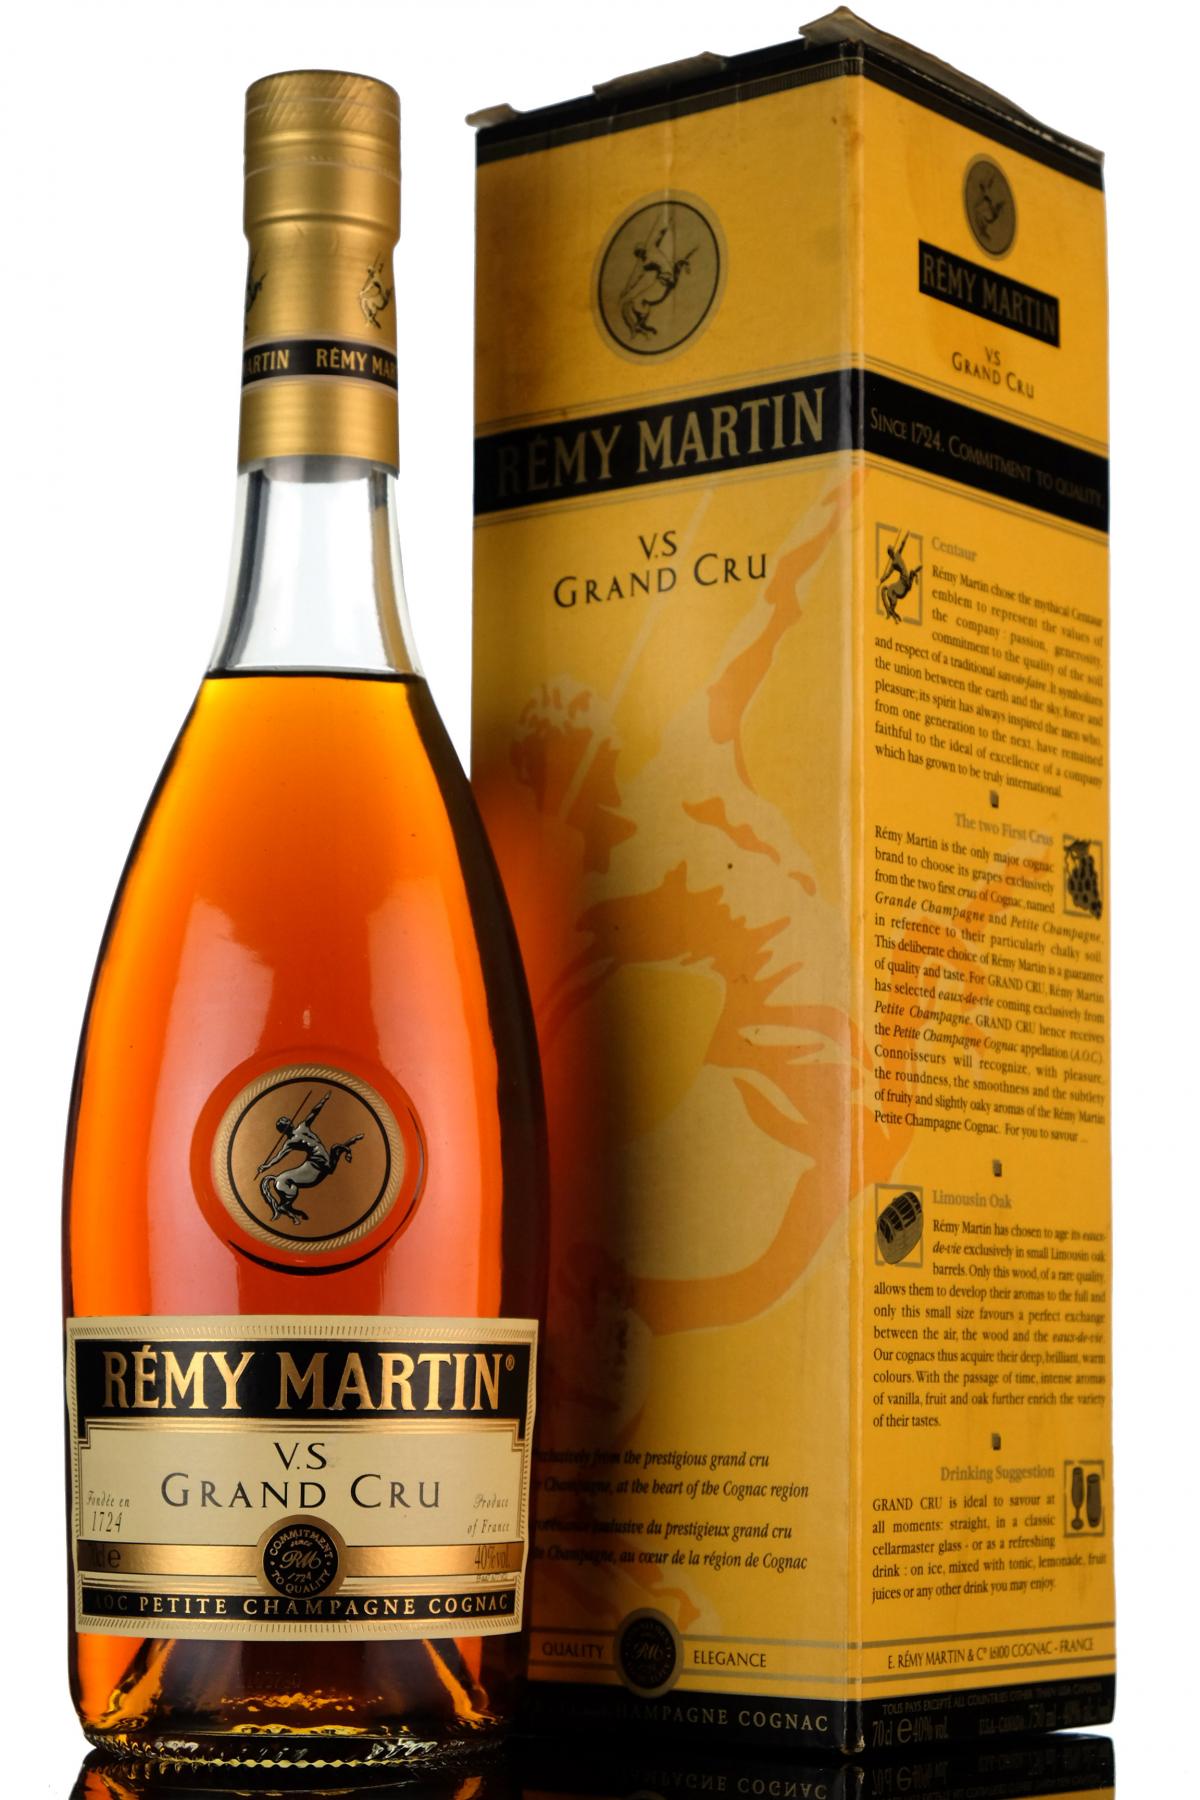 Remy Martin VS Grand Cru - Champagne Cognac